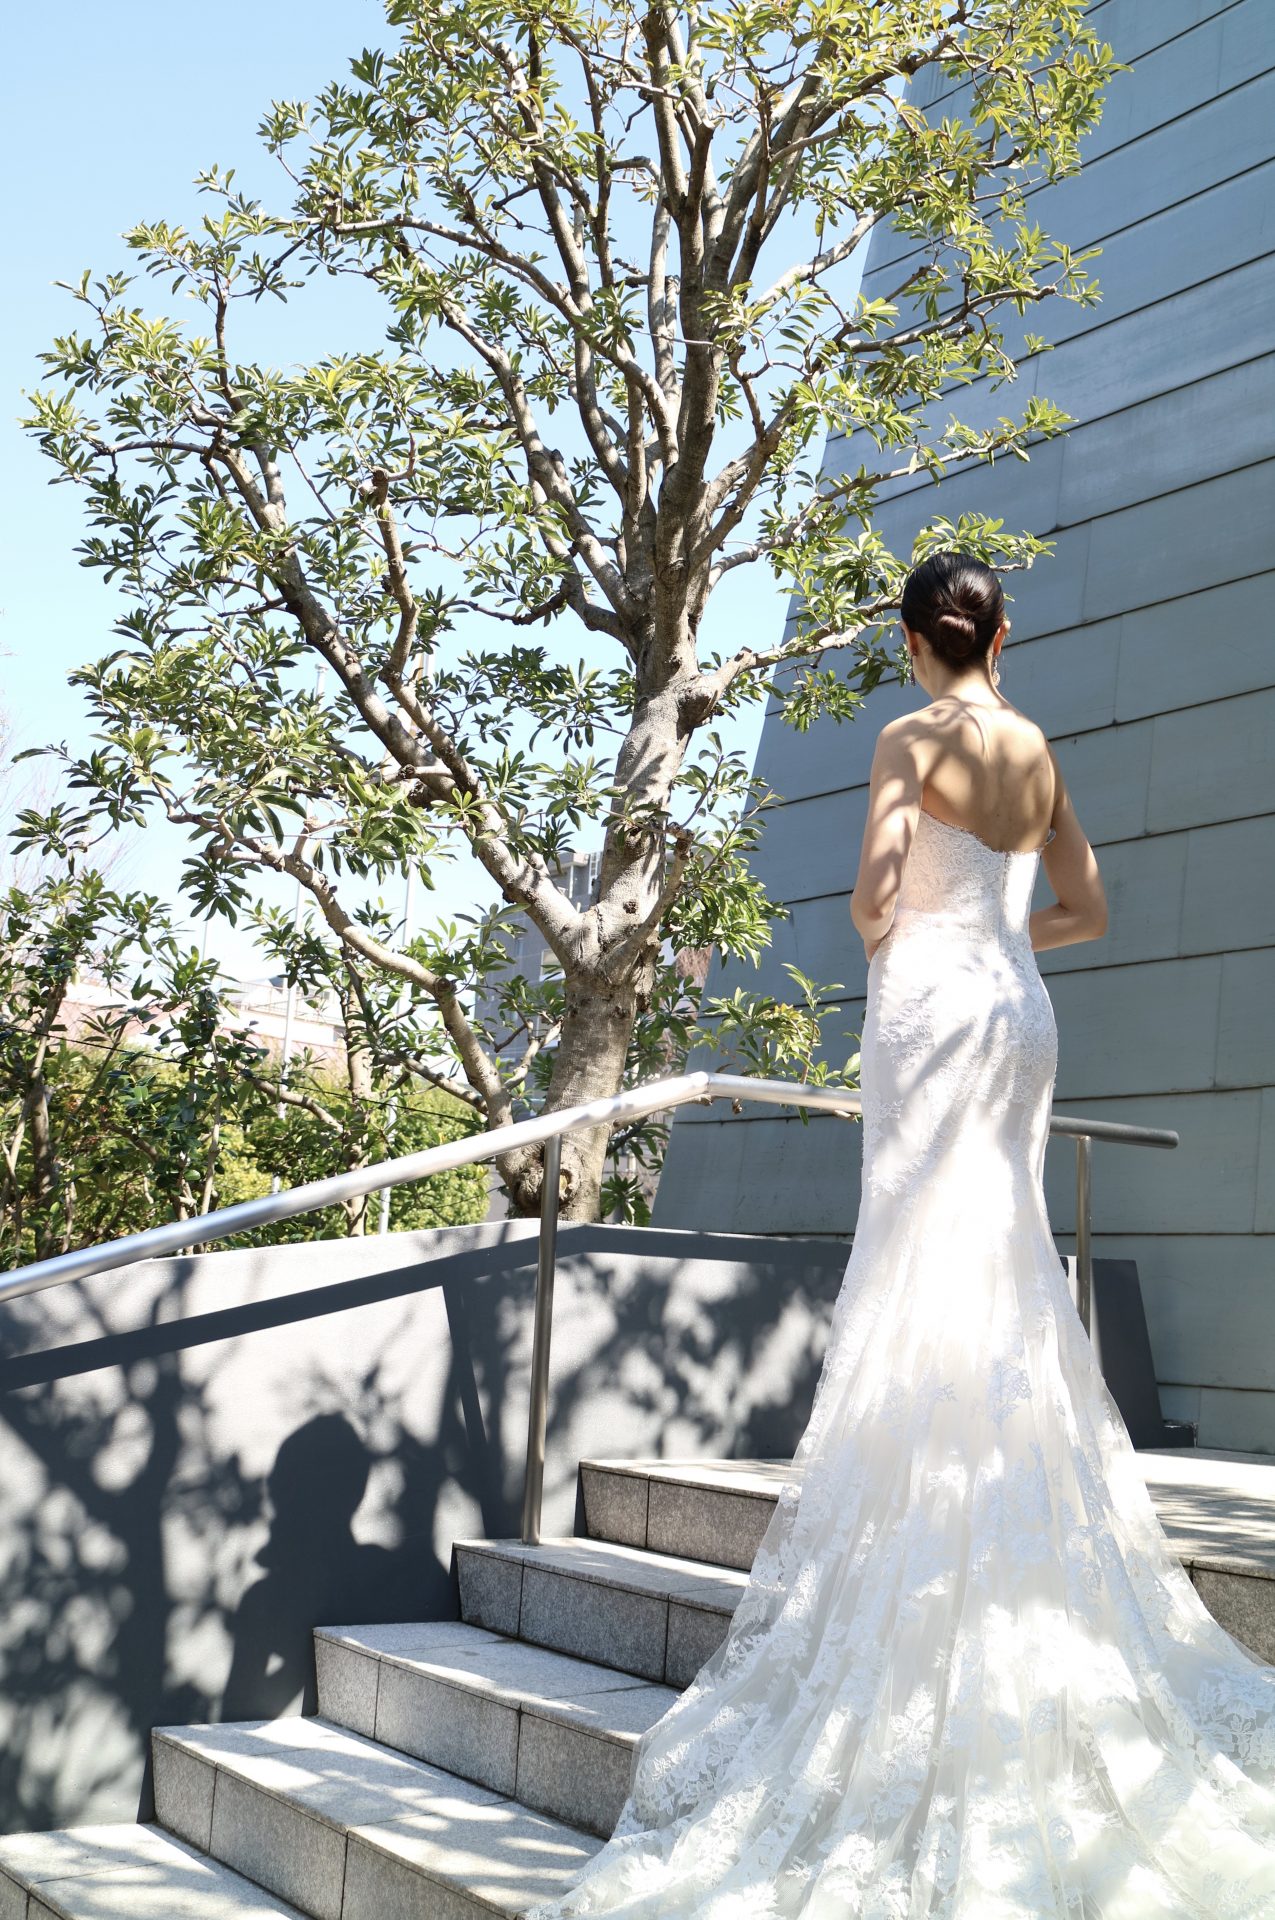 バックスタイルが美しいザトリートドレッシング京都店でお取り扱いをしているモニークルイリエのウエディングドレスを着てお過ごしになる結婚式